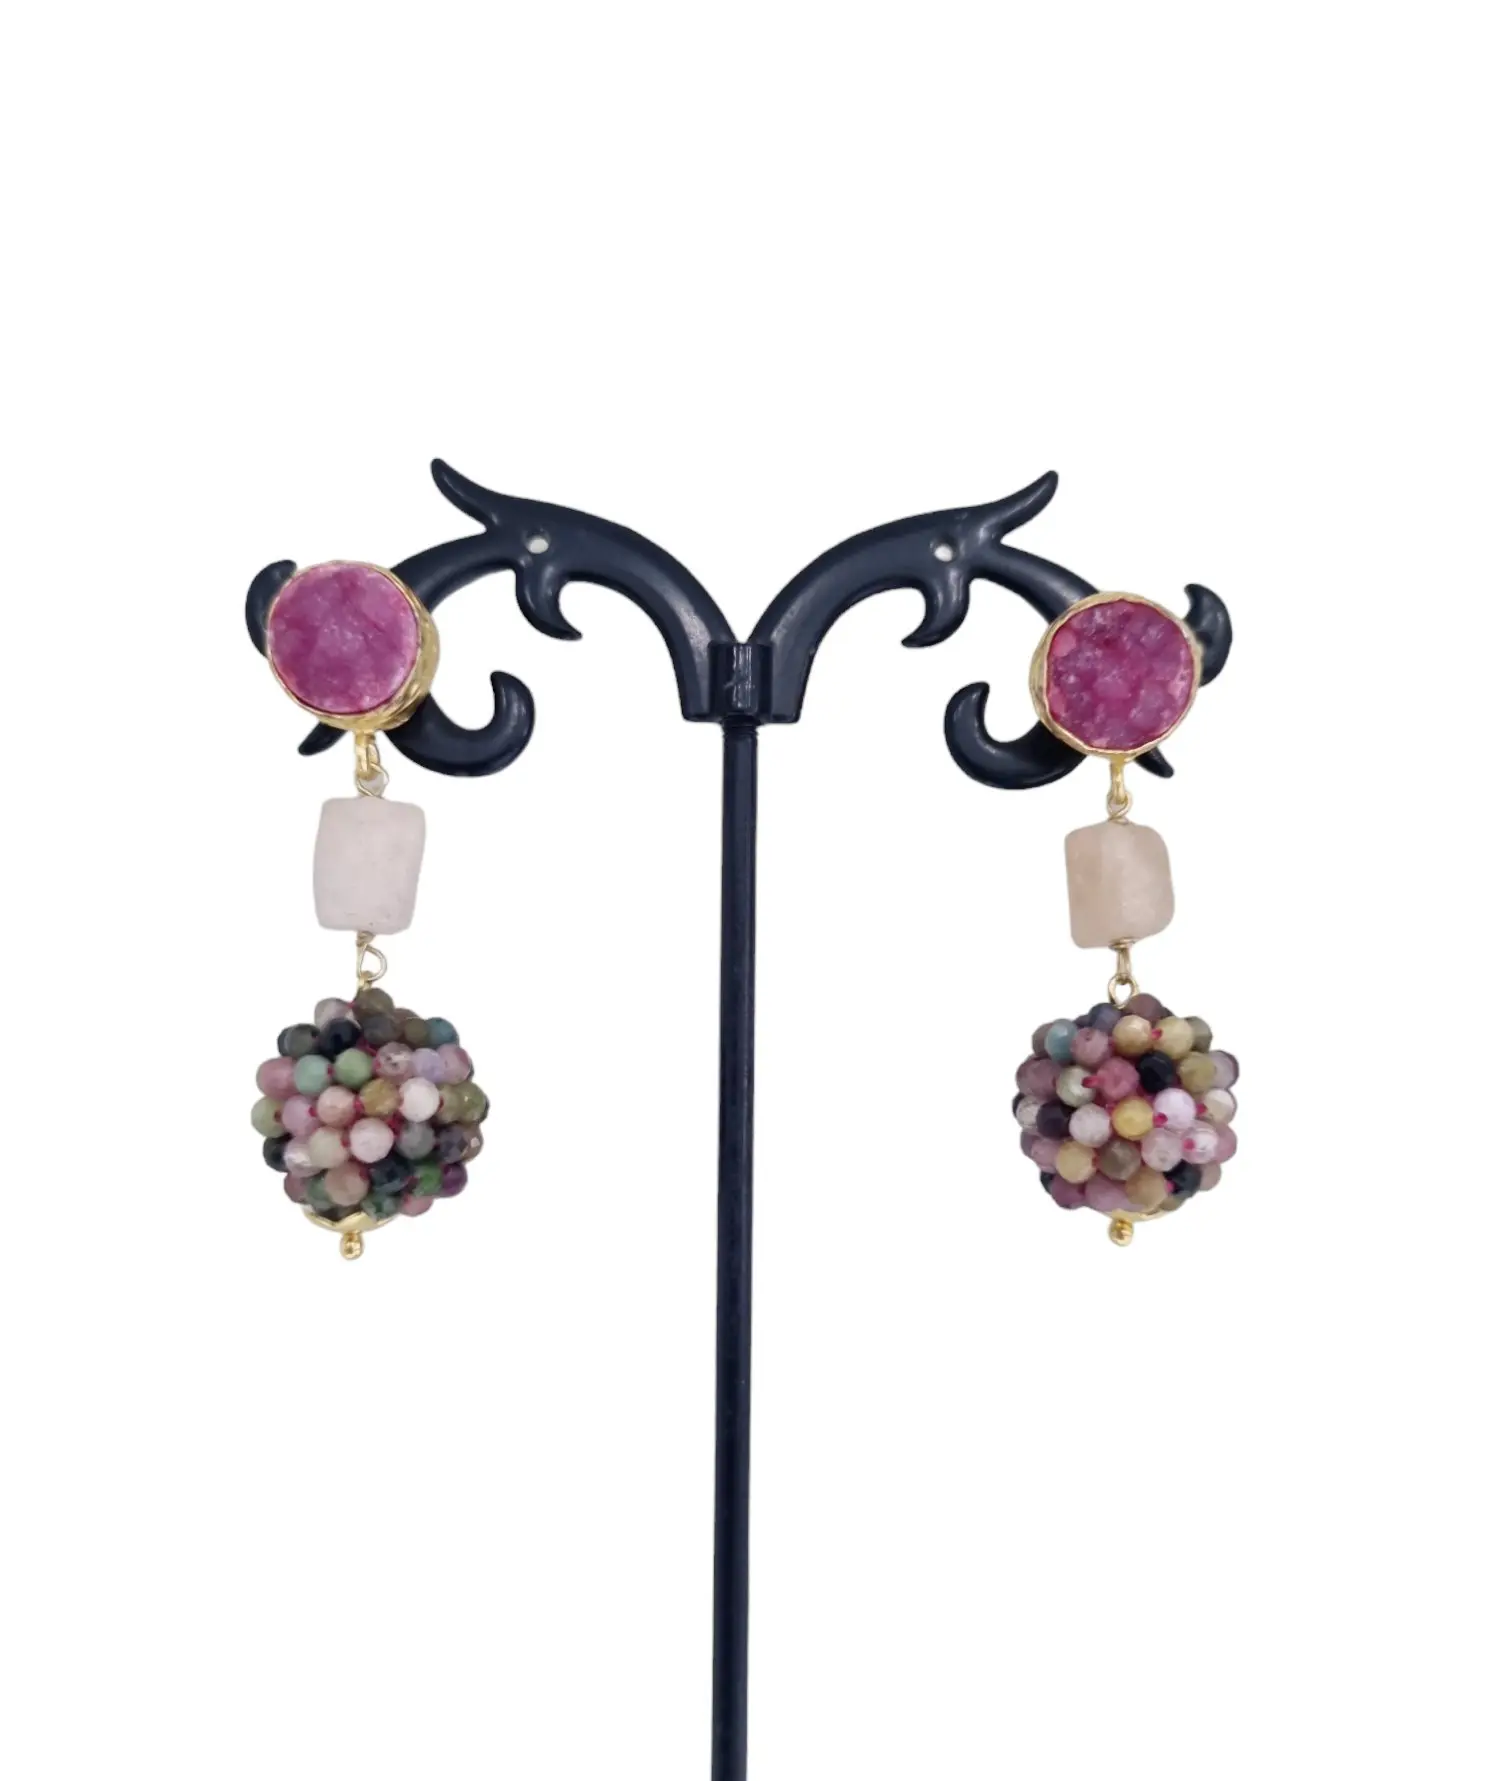 Boucles d'oreilles avec quartz rose druzy et tourmaline – Poids 5,7g, longueur 4,5cm.